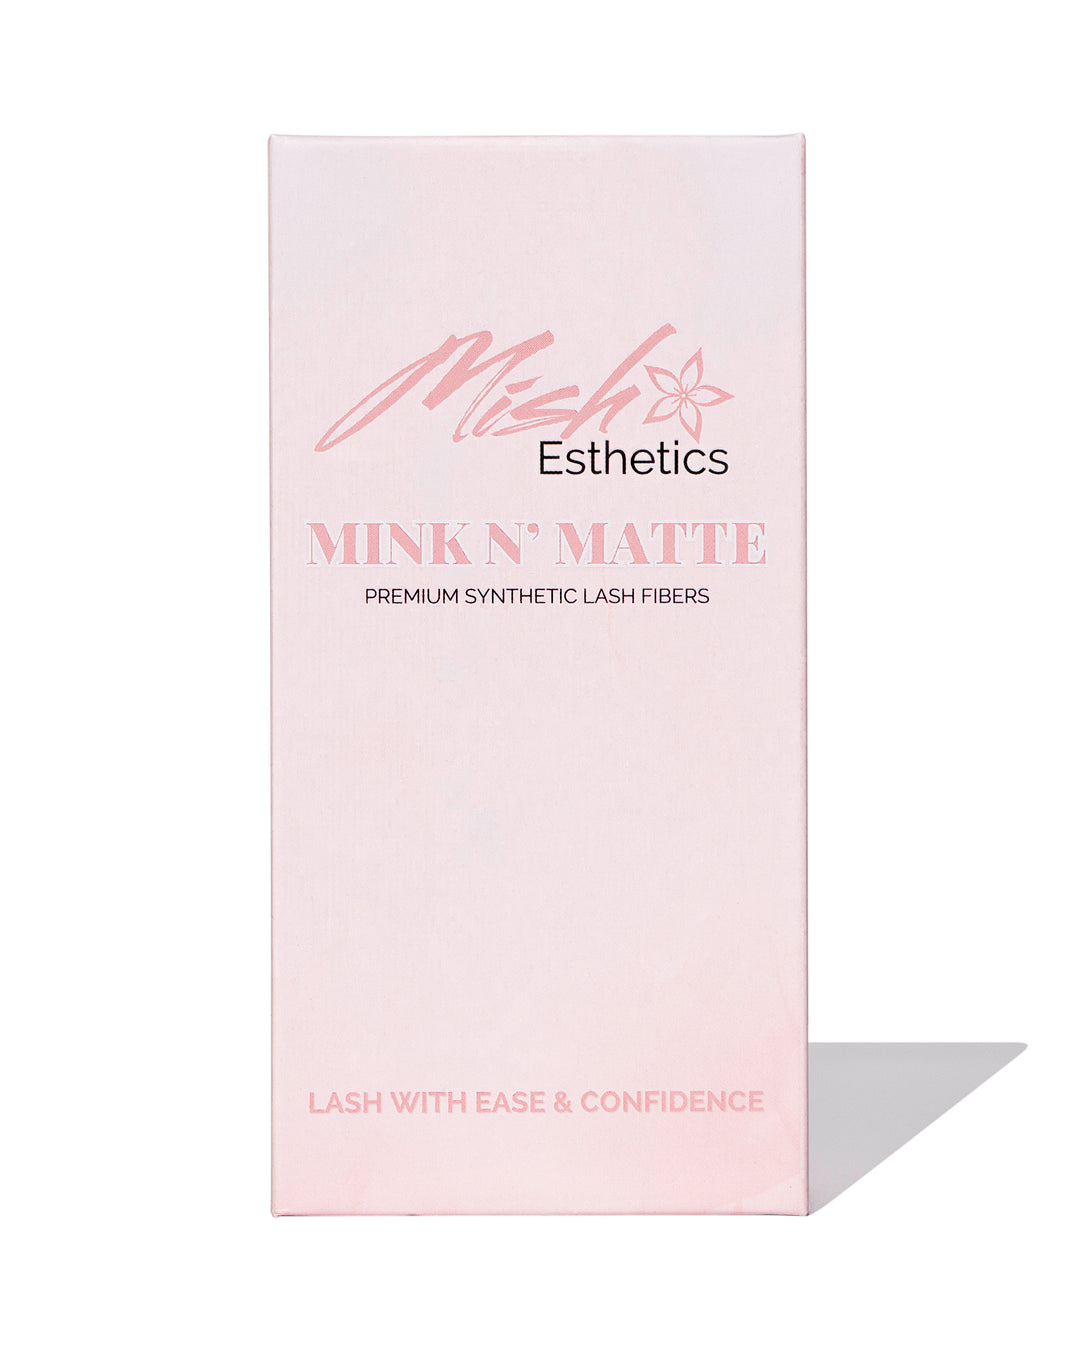 0.15 Mixed Mink N' Matte